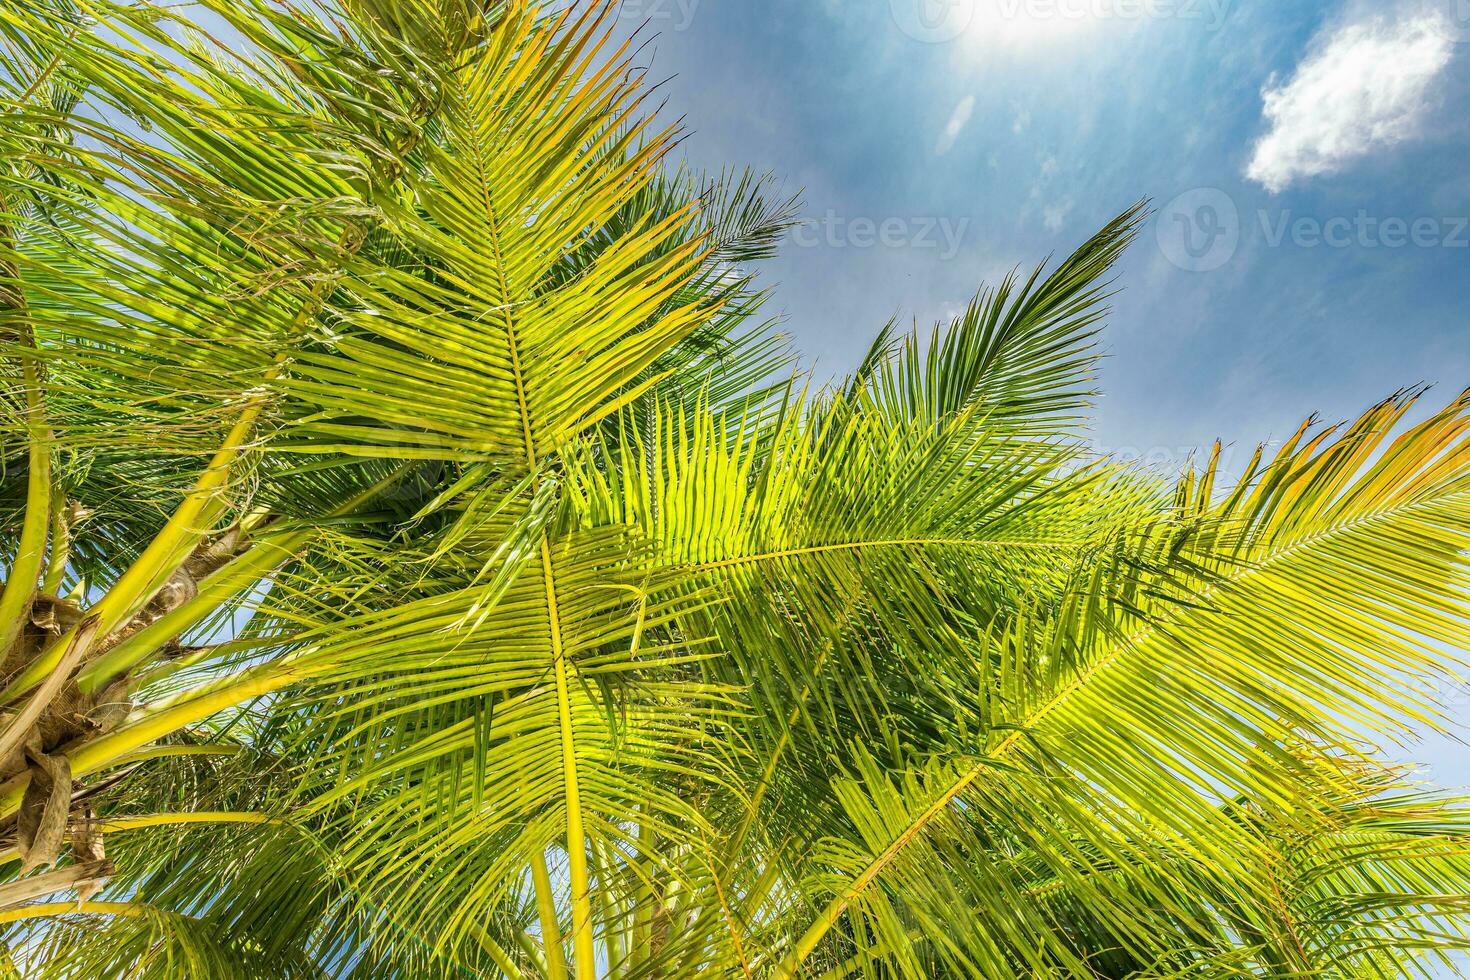 perfekt Sommer Ferien Hintergrund. Blau sonnig Himmel und Kokosnuss Palme Bäume Aussicht von unter, Jahrgang Stil, tropisch Strand und exotisch Sommer- Hintergrund, Reise Konzept. tolle Natur Strand Paradies foto